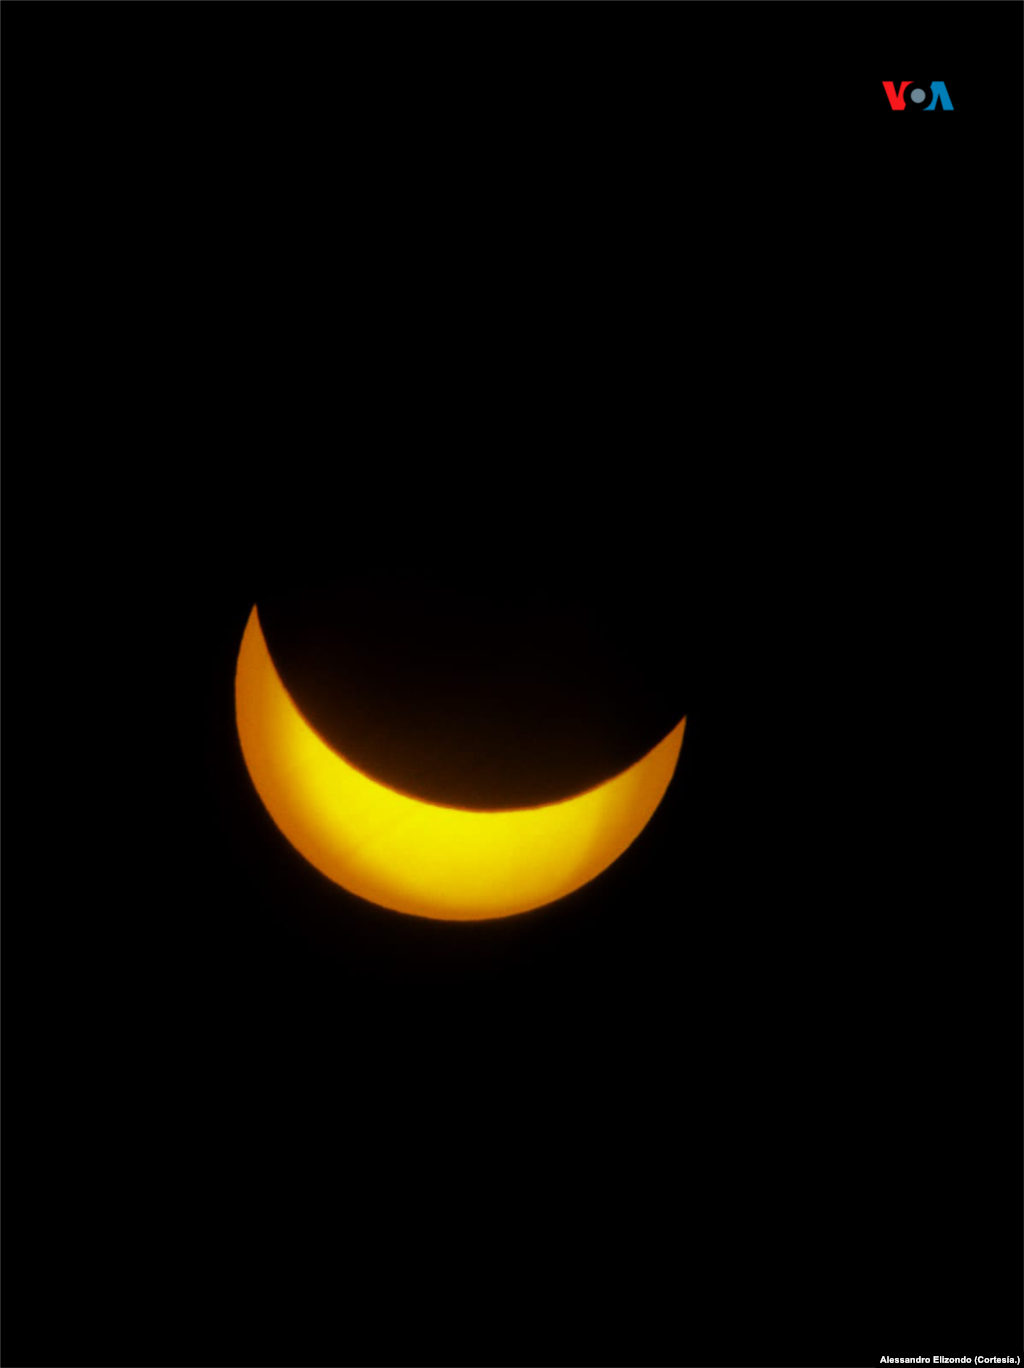 Fotografía cortesía del alumno de la Facultad de Ciencias Físico Matemáticas, Alessandro Elizondo, la cual se realizó durante el eclipse de sol en México.